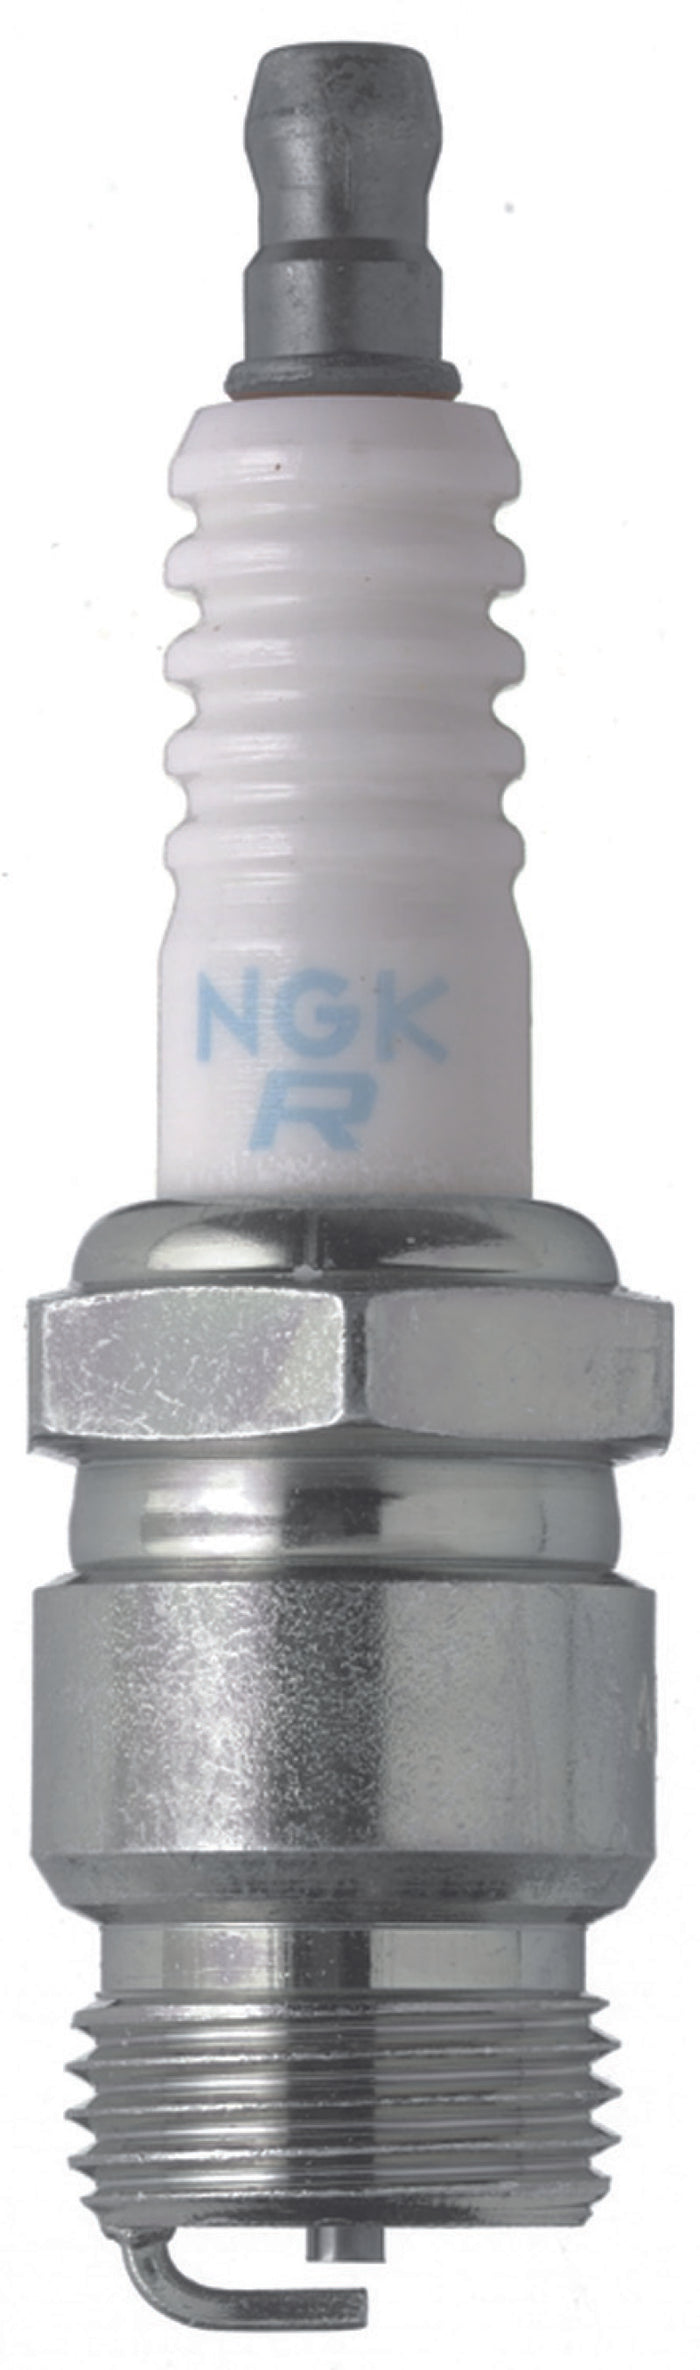 NGK Standard Spark Plug Box of 1 (AR6FS)